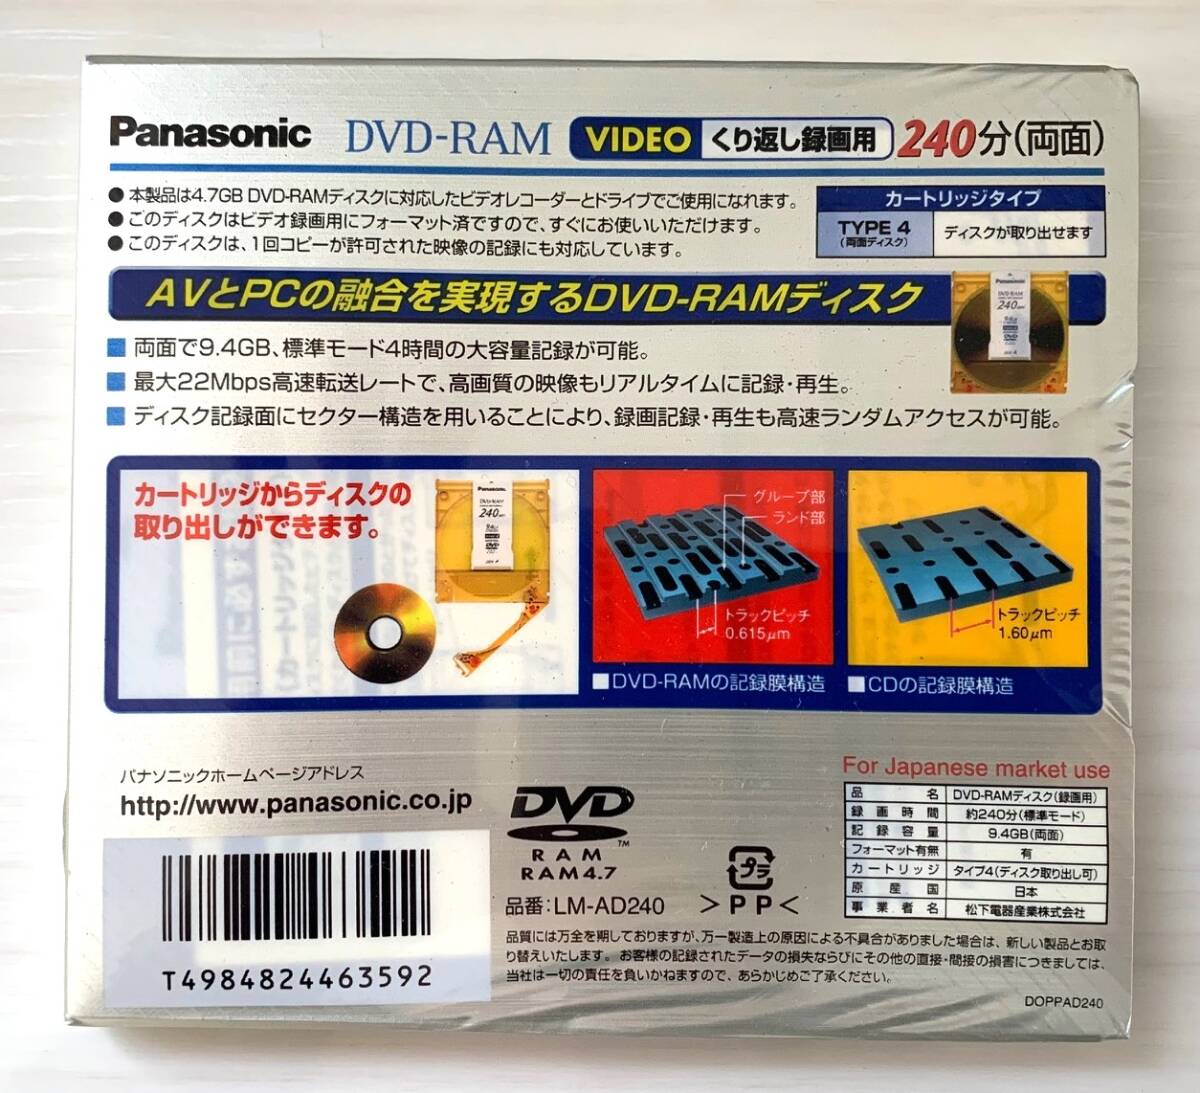 * нераспечатанный товар прекрасный товар * DVD RAM диск 9.4GB 240 минут 5 листов Panasonic повторение видеозапись для Panasonic сделано в Японии 